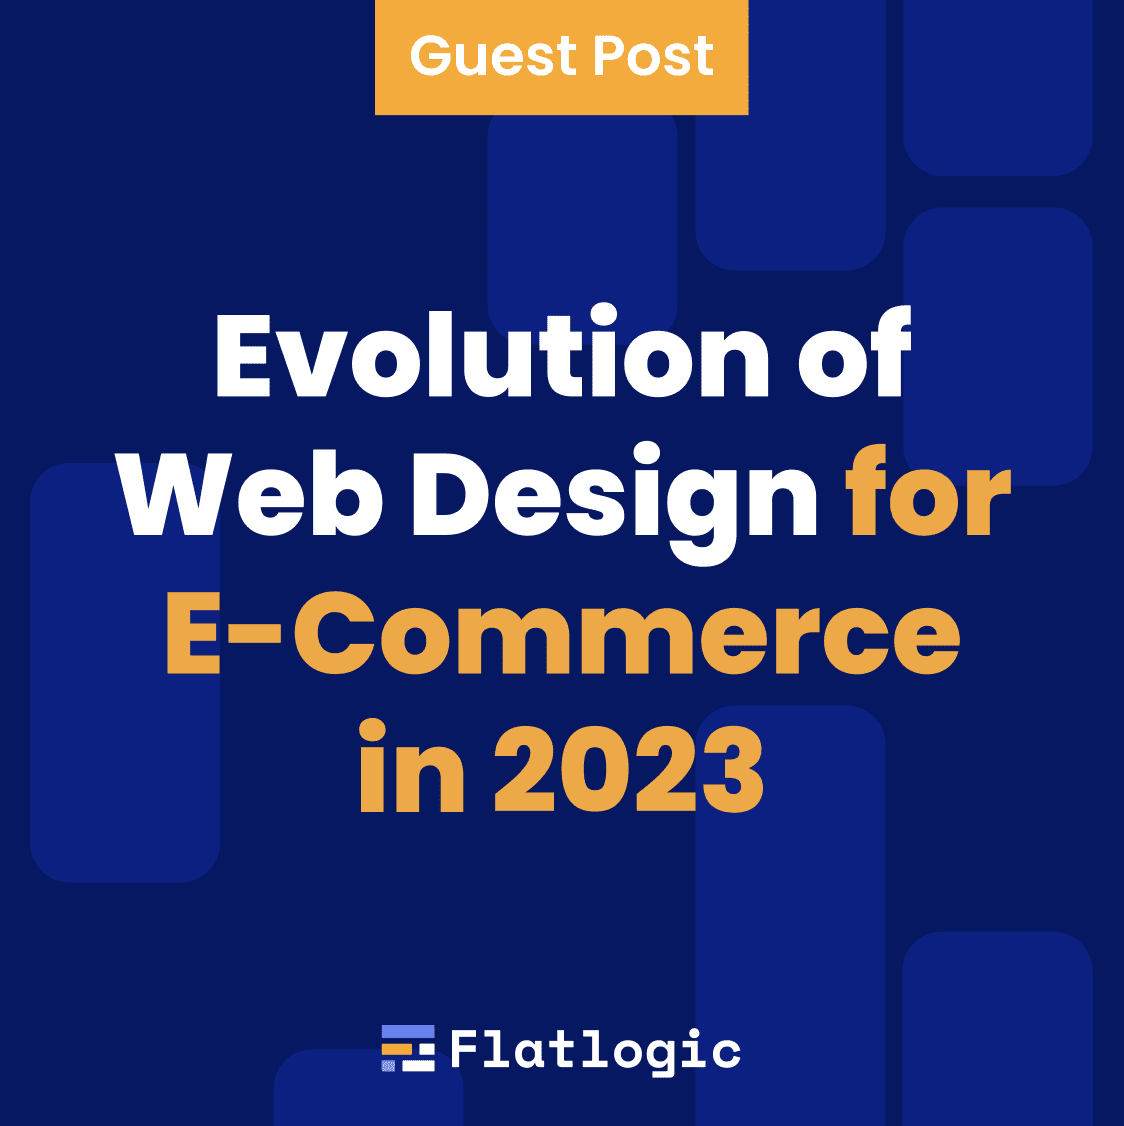 Evolution of Web Design for E-commerce in 2023